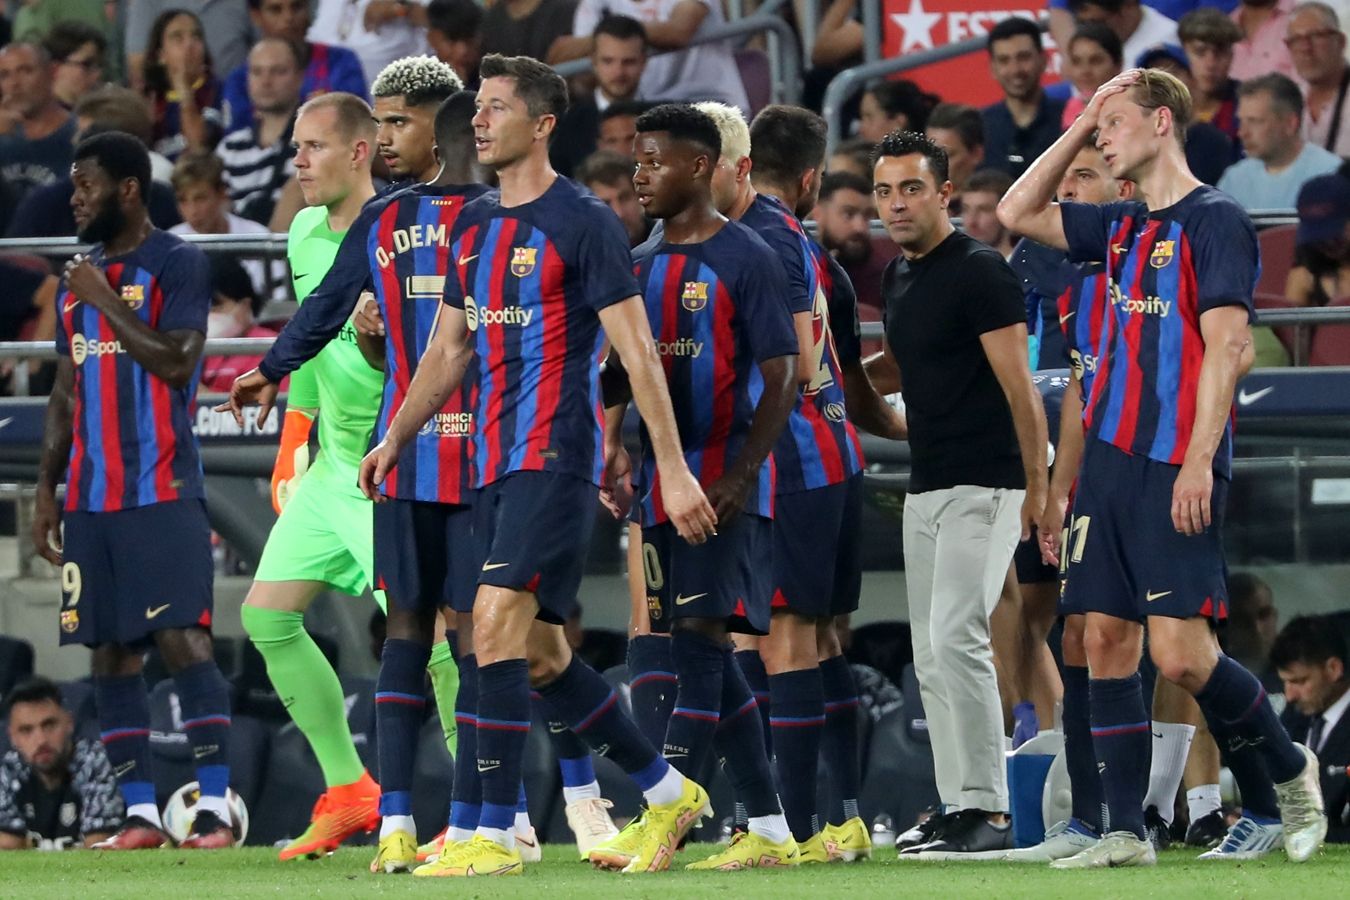 Хави: «Барселона» ставит цель финишировать в Ла Лиге на втором месте